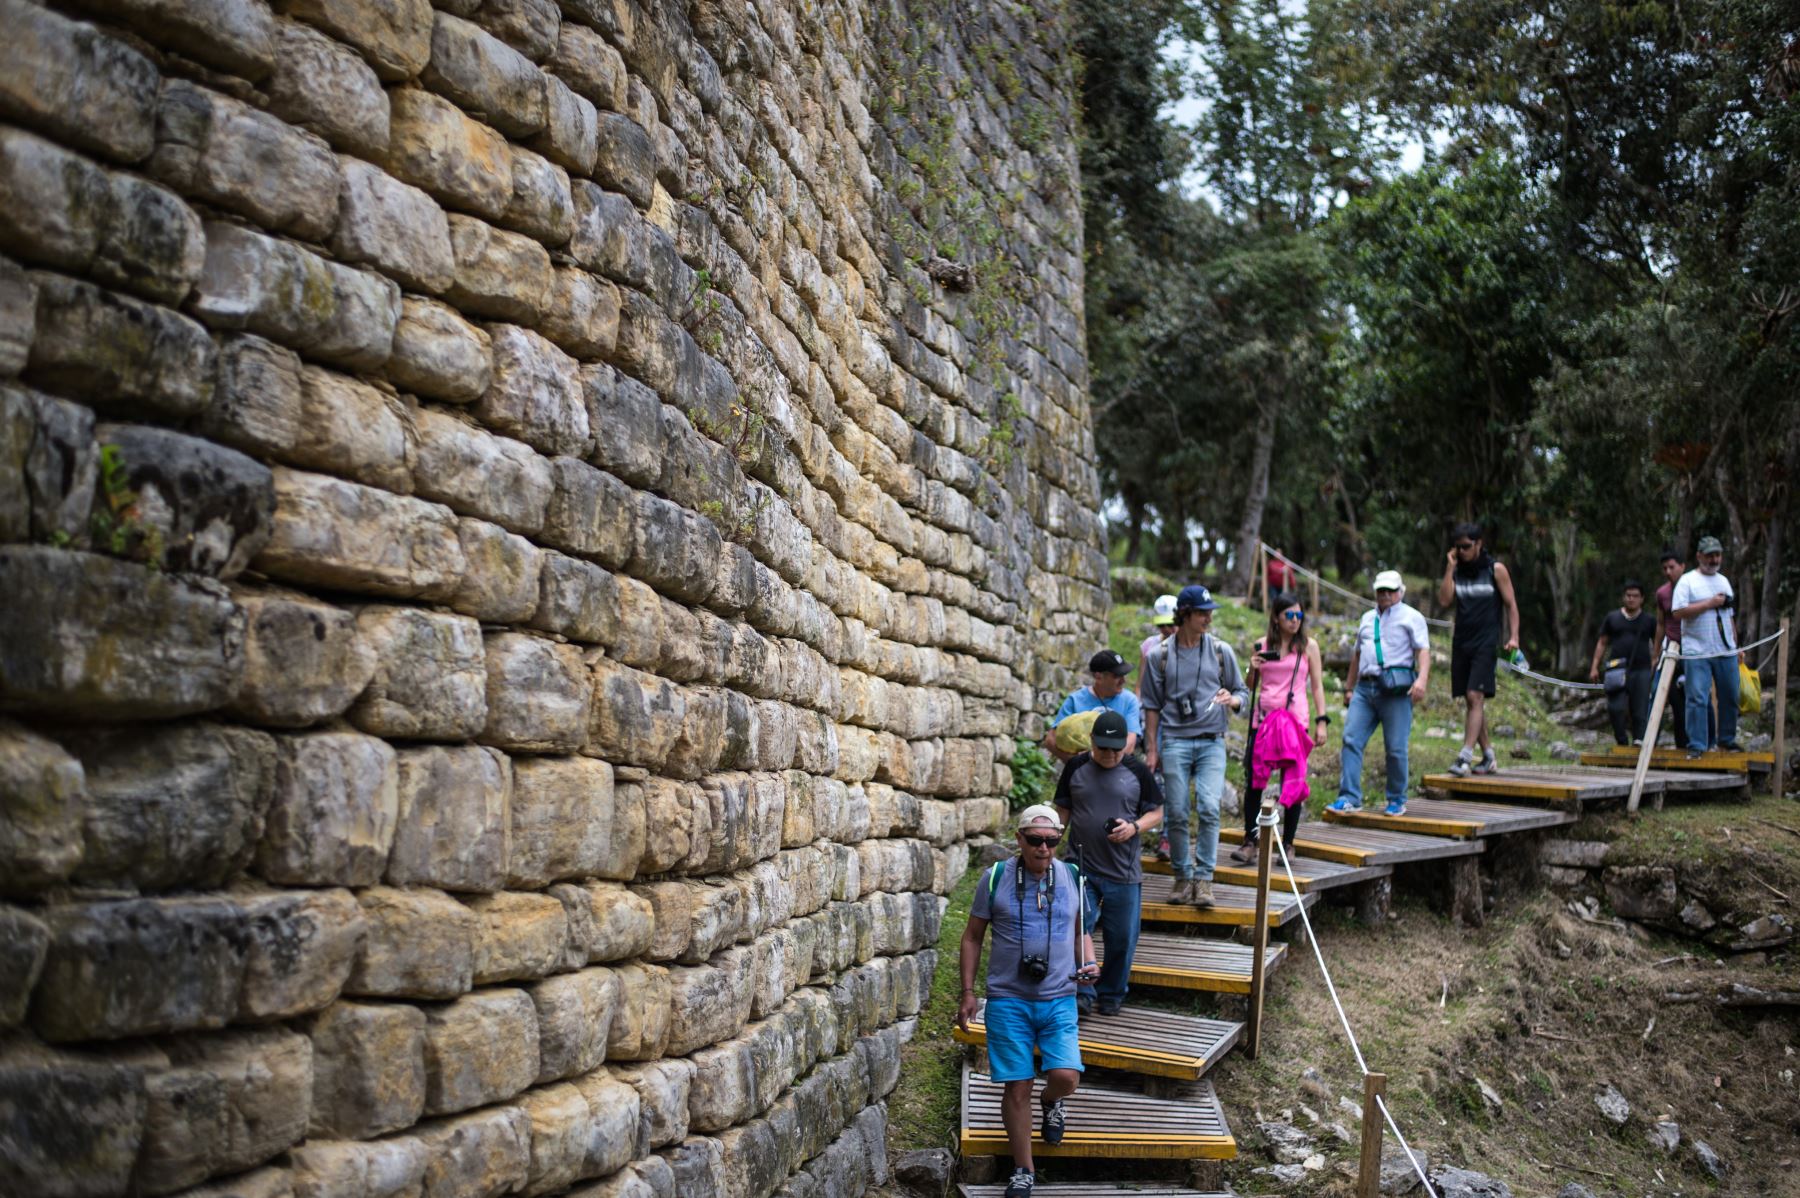 Los turistas visitan Kuelap, una ciudadela fortificada construida por los indígenas Chachapoya entre los siglos VI y XI en la región amazónica. Foto: AFP